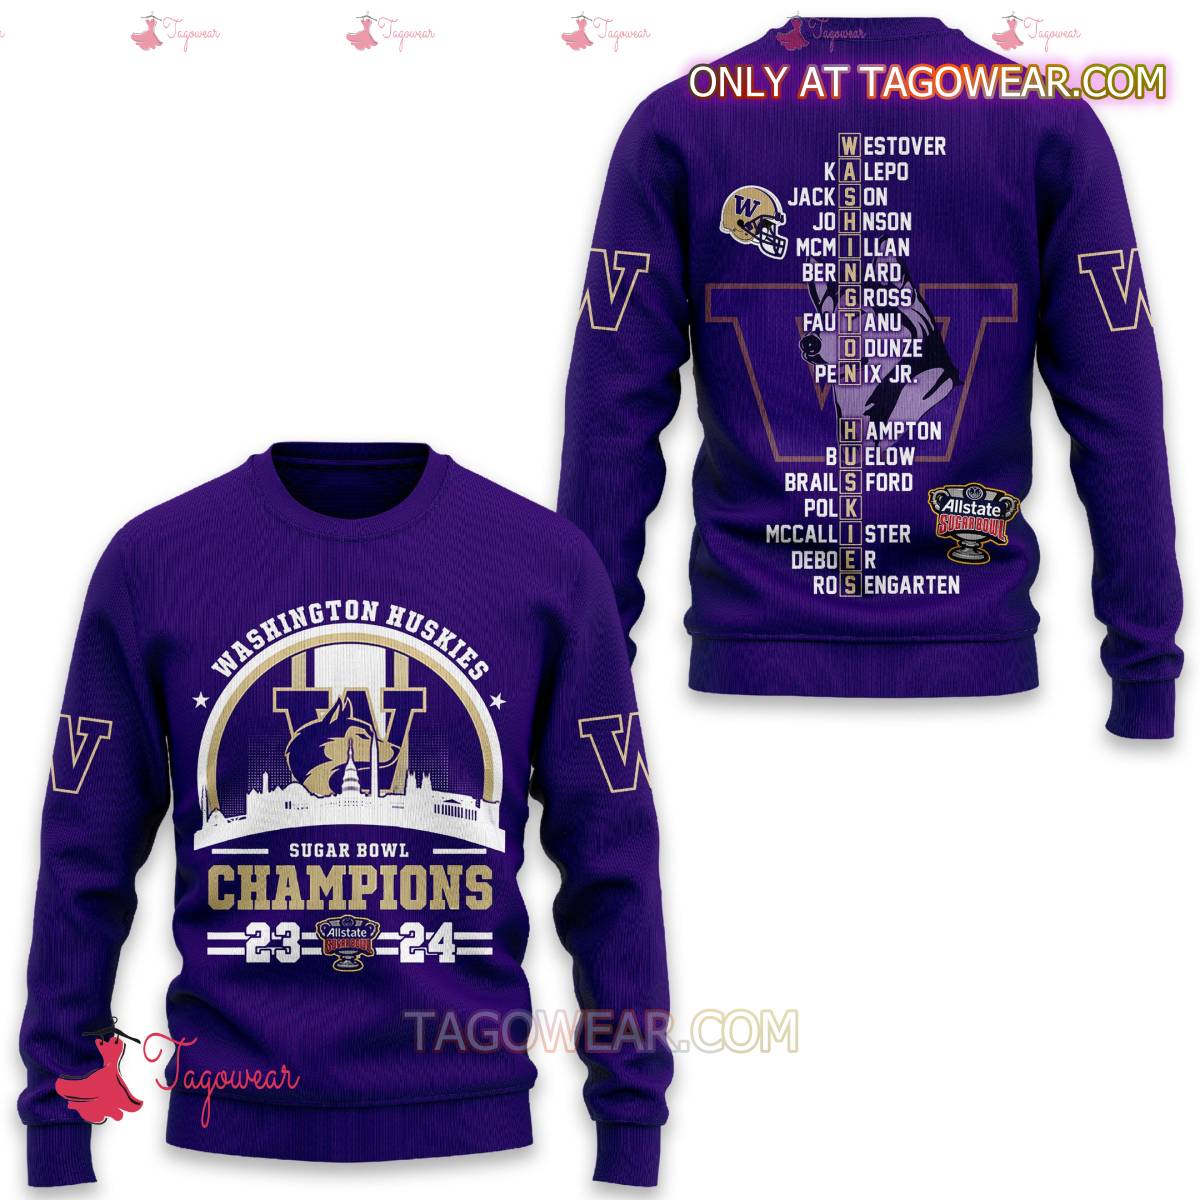 Washington Huskies Sugar Bowl Champions 2023 2024 T-shirt, Hoodie